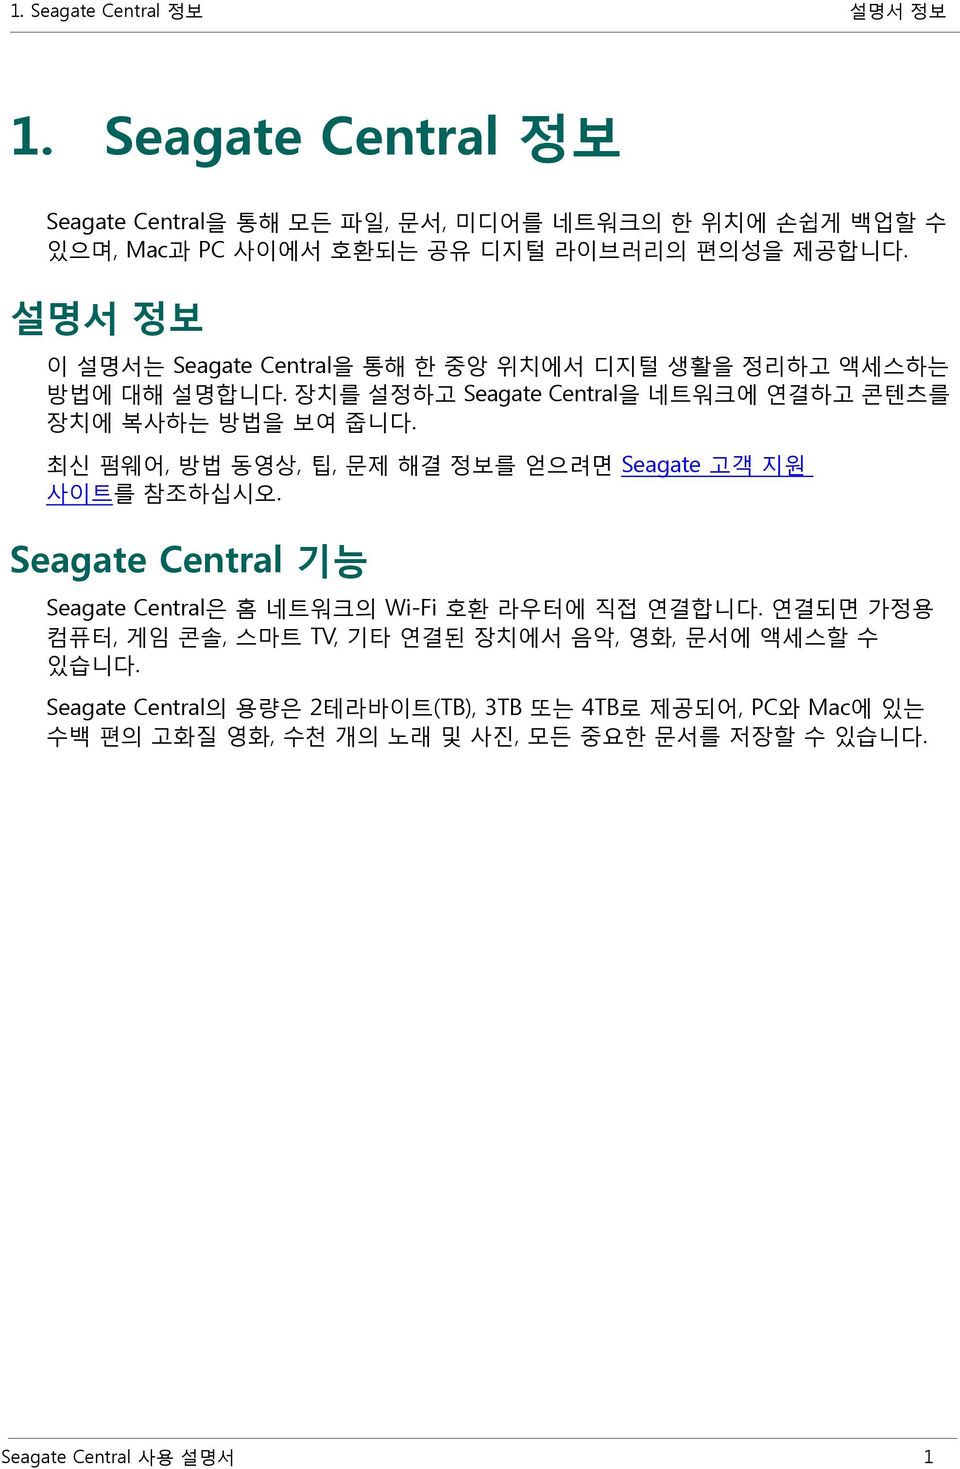 최신 펌웨어, 방법 동영상, 팁, 문제 해결 정보를 얻으려면 Seagate 고객 지원 사이트를 참조하십시오. Seagate Central 기능 Seagate Central은 홈 네트워크의 Wi-Fi 호환 라우터에 직접 연결합니다.